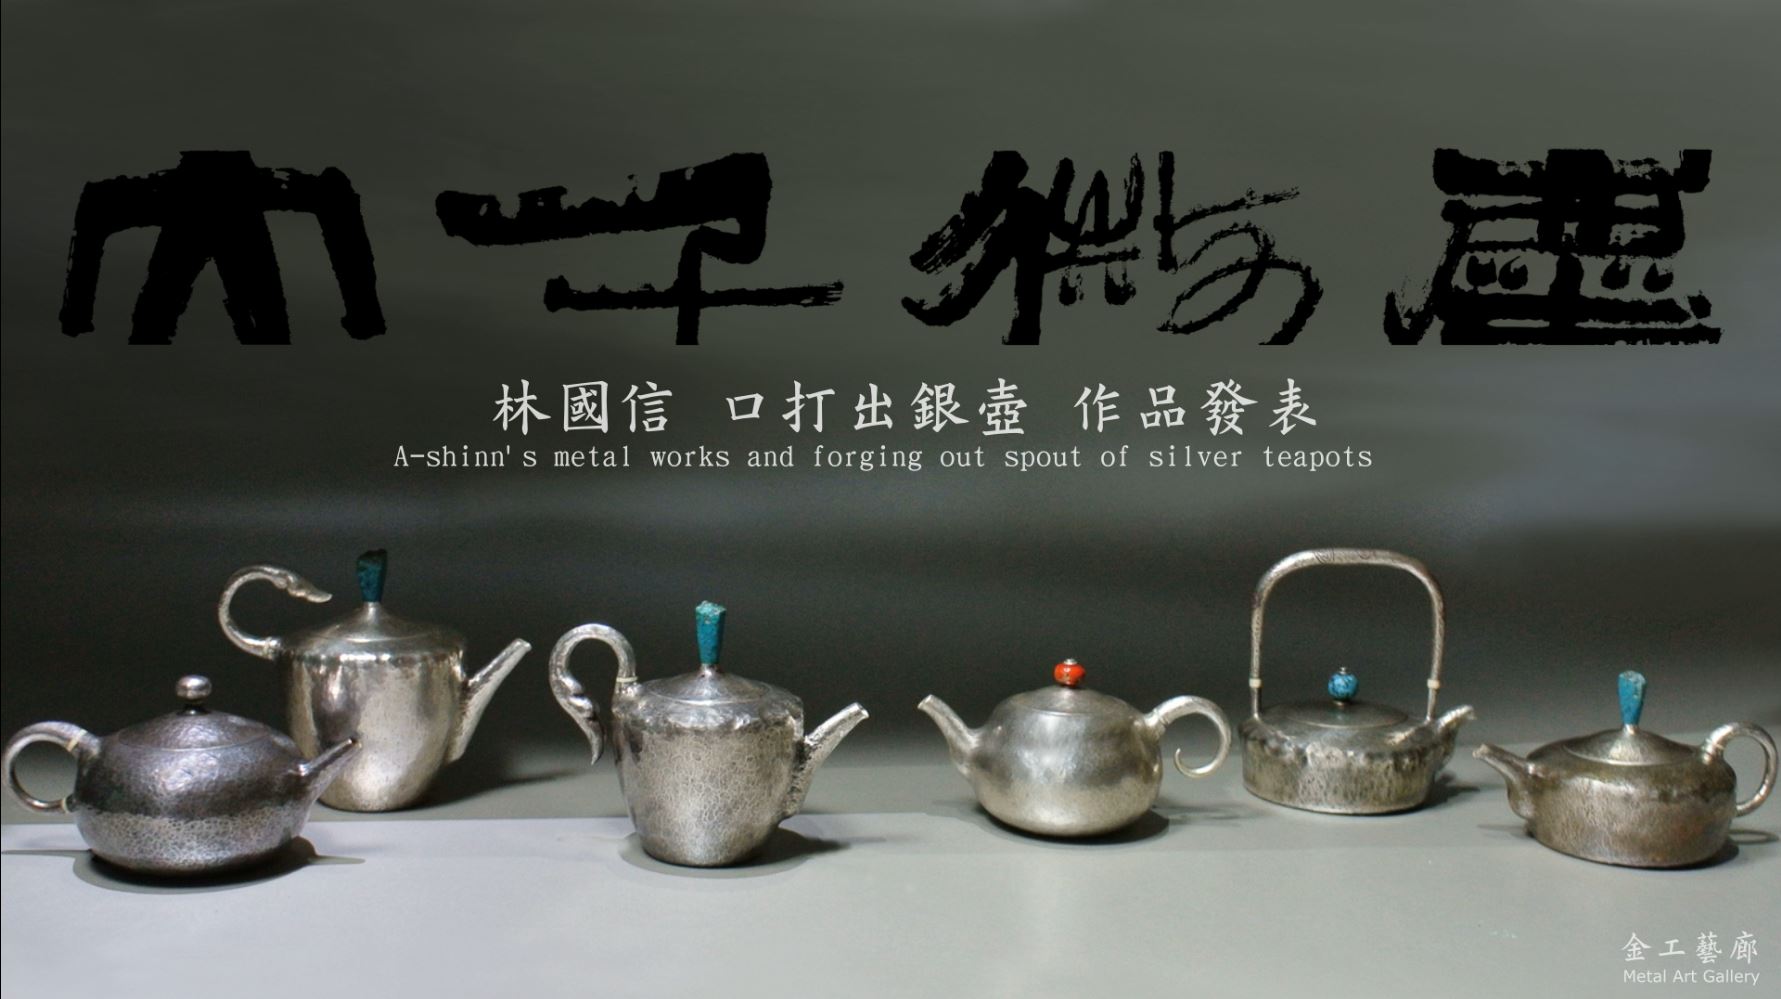 林國信 最新銀壺口打出作品發表